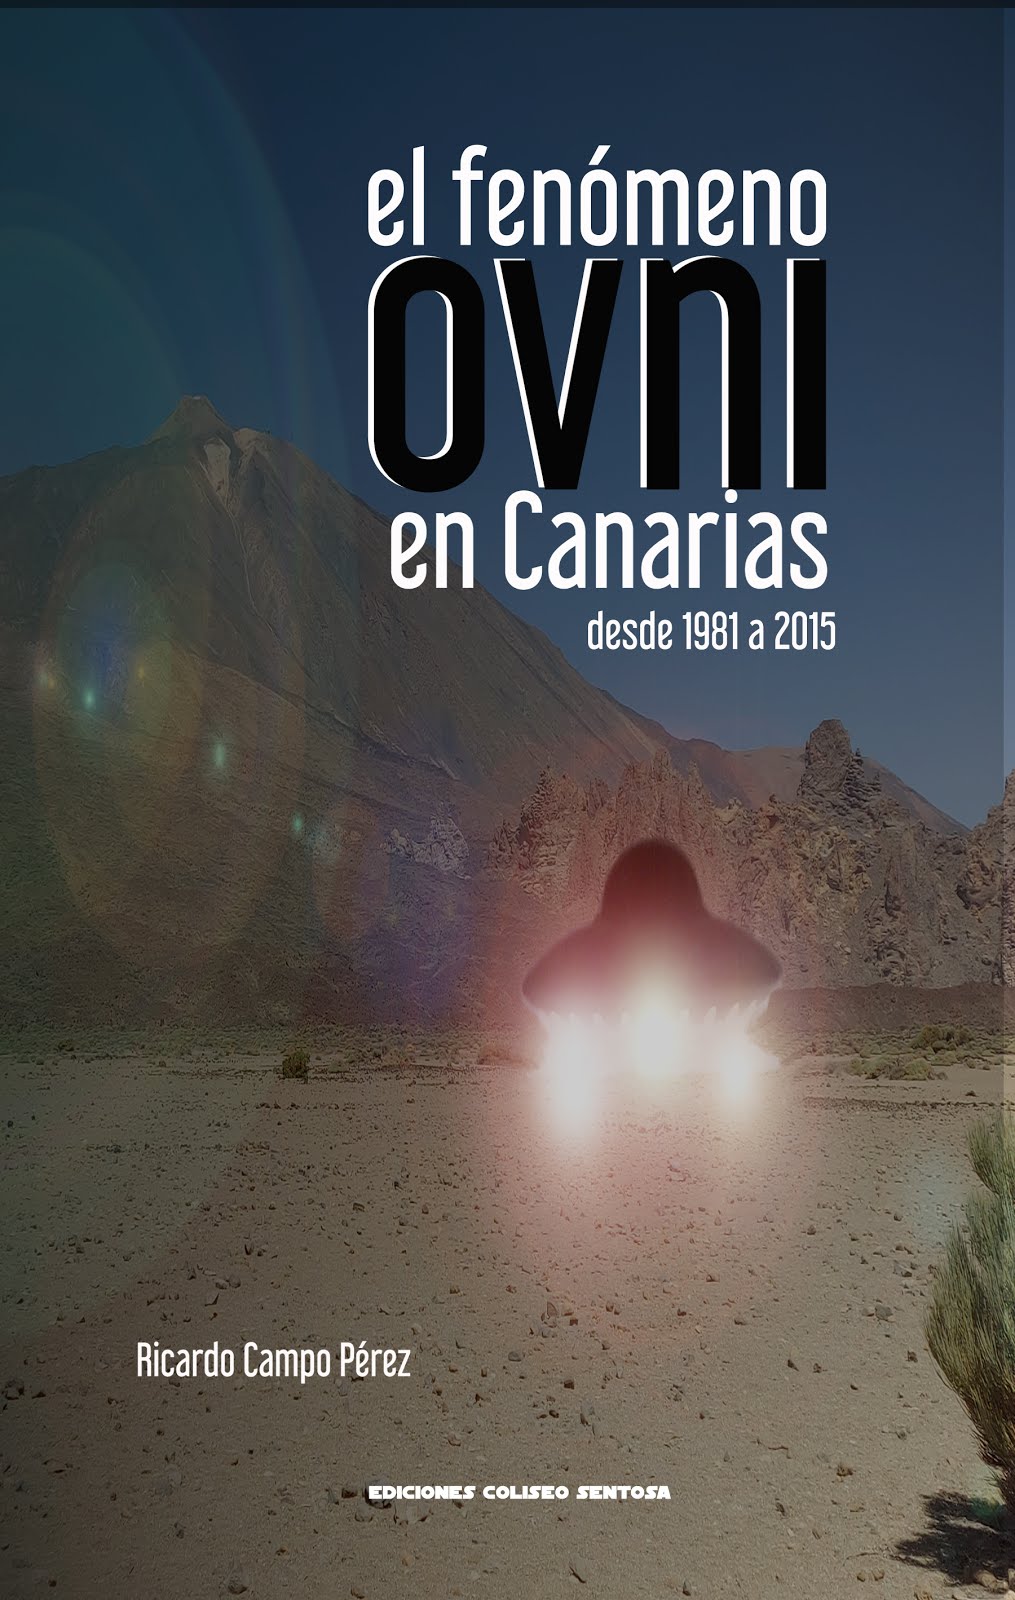 El fenómeno ovni en Canarias desde 1981 a 2015